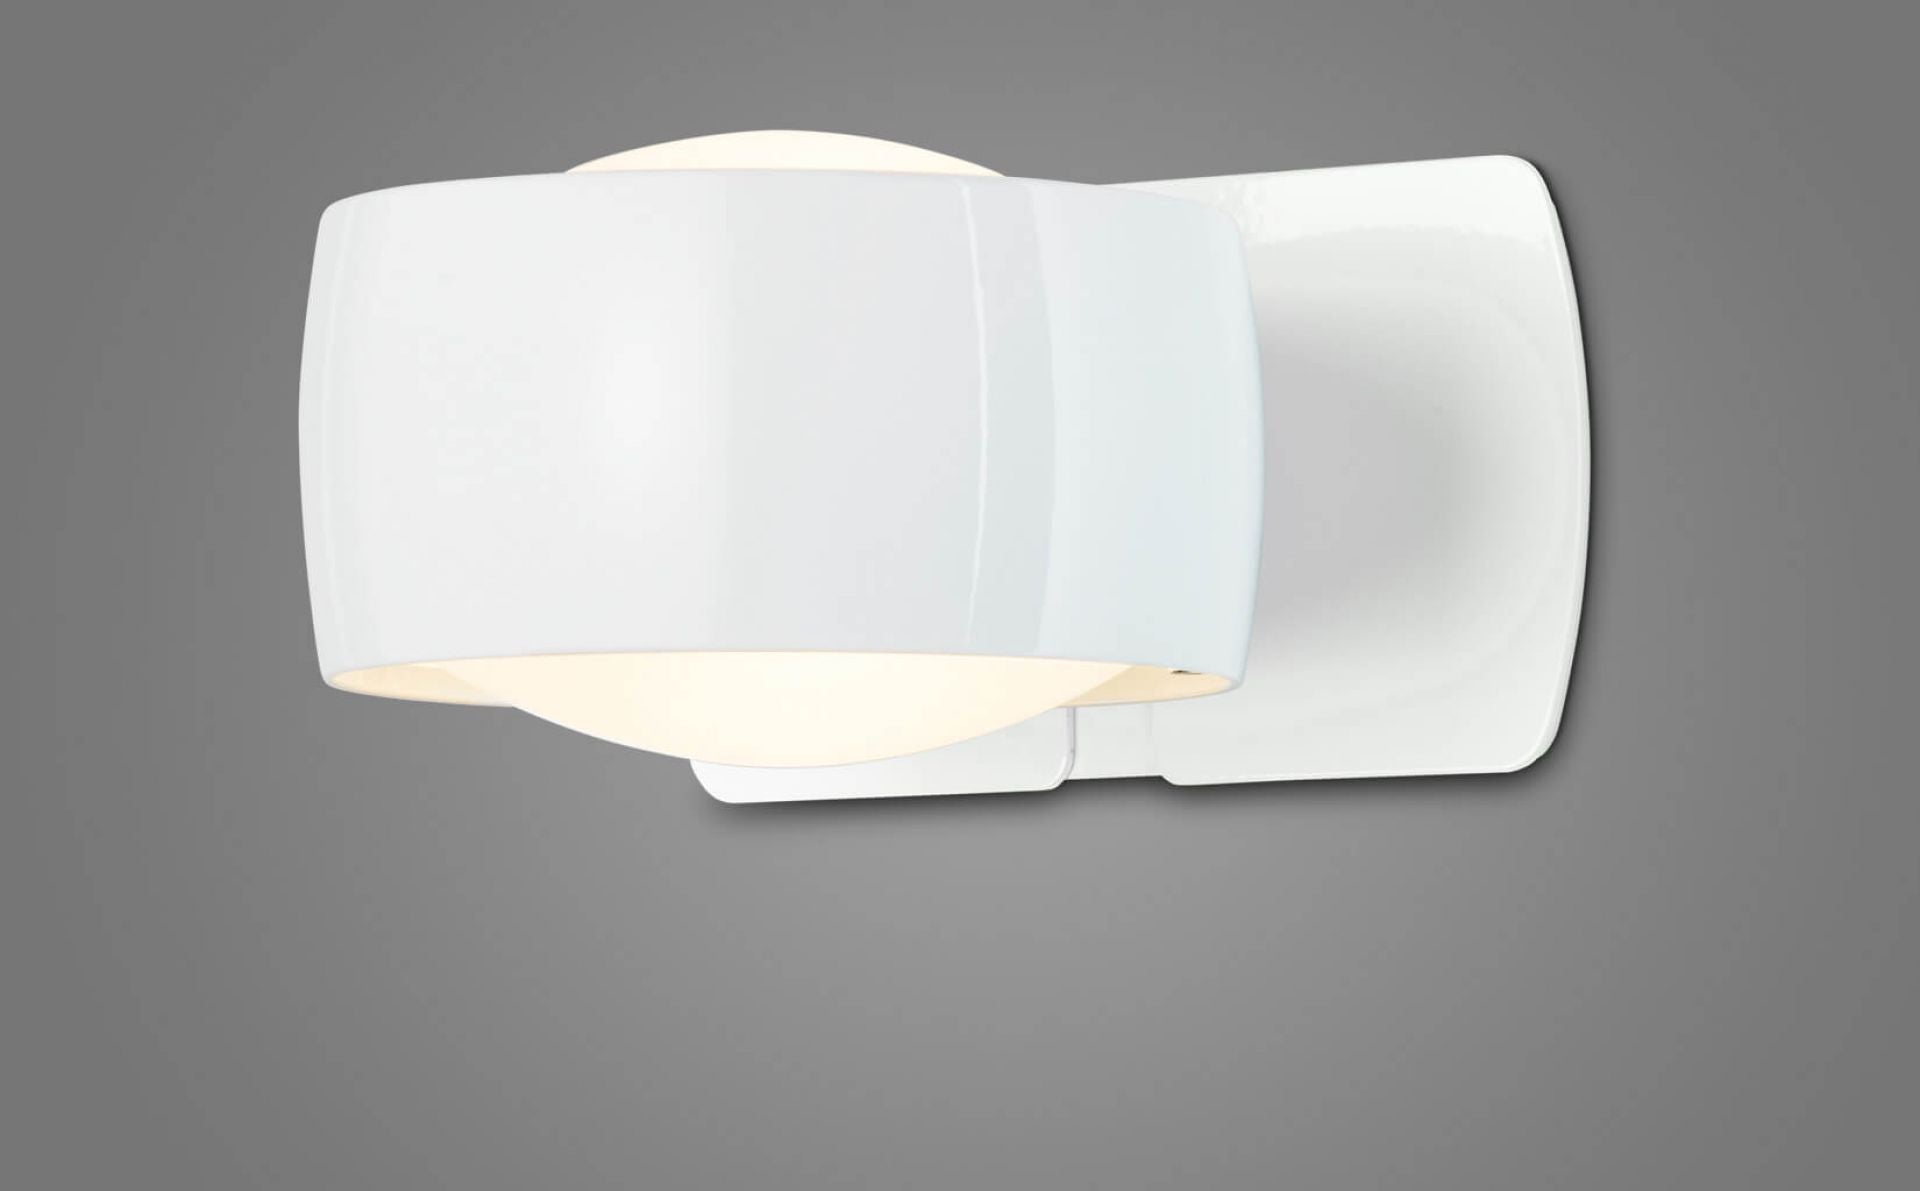 Oligo - Wandleuchte Grace LED-Wandleuchte-Oligo-Farbe Gehäuse Weiß glänzend | Farbe Kopf Weiß glänzend-Einbau-40-931-23-20-TOJU Interior